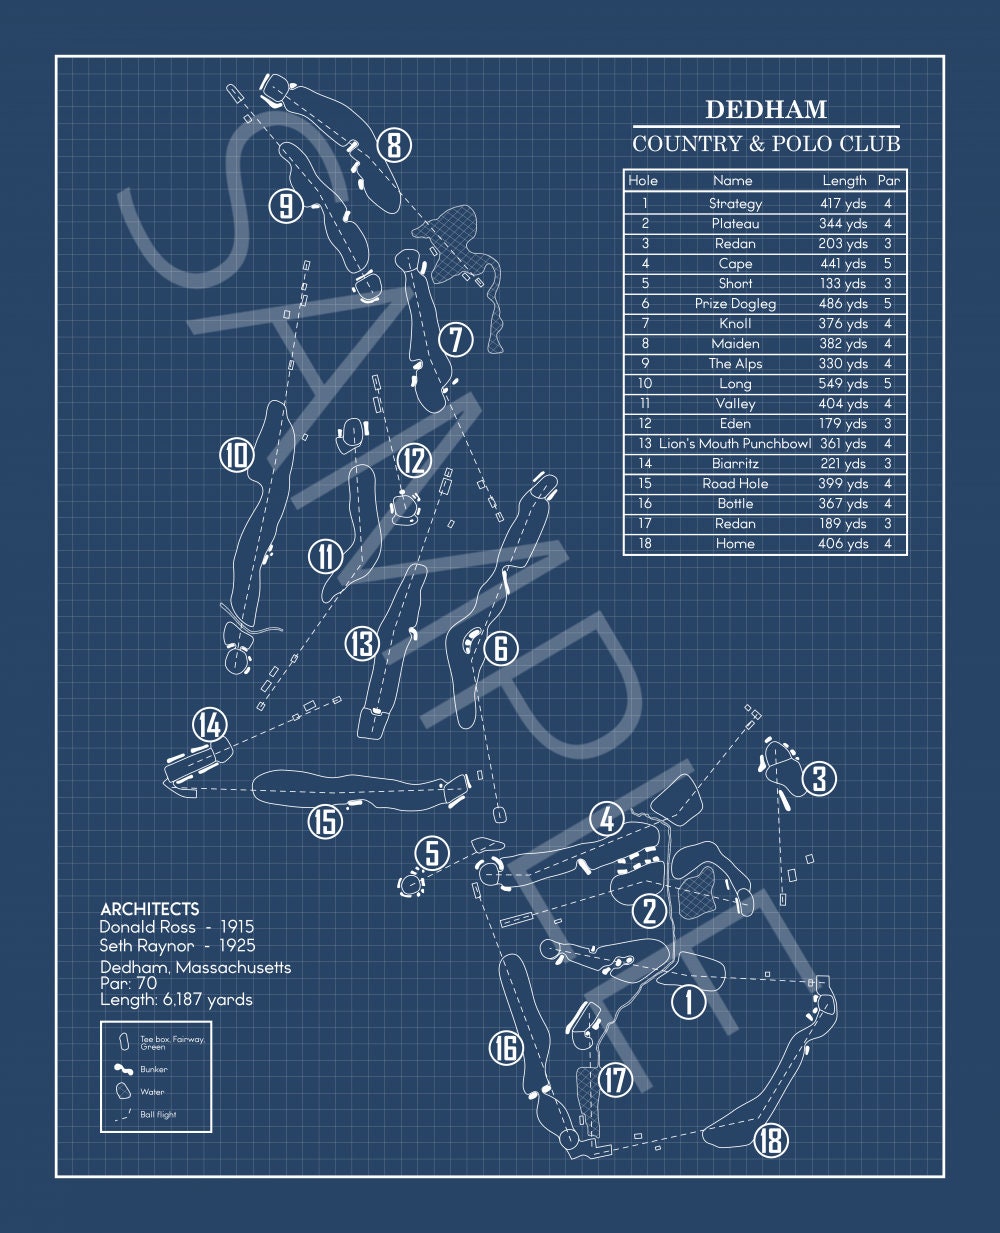 Dedham Country & Polo Club Blueprint (Print)